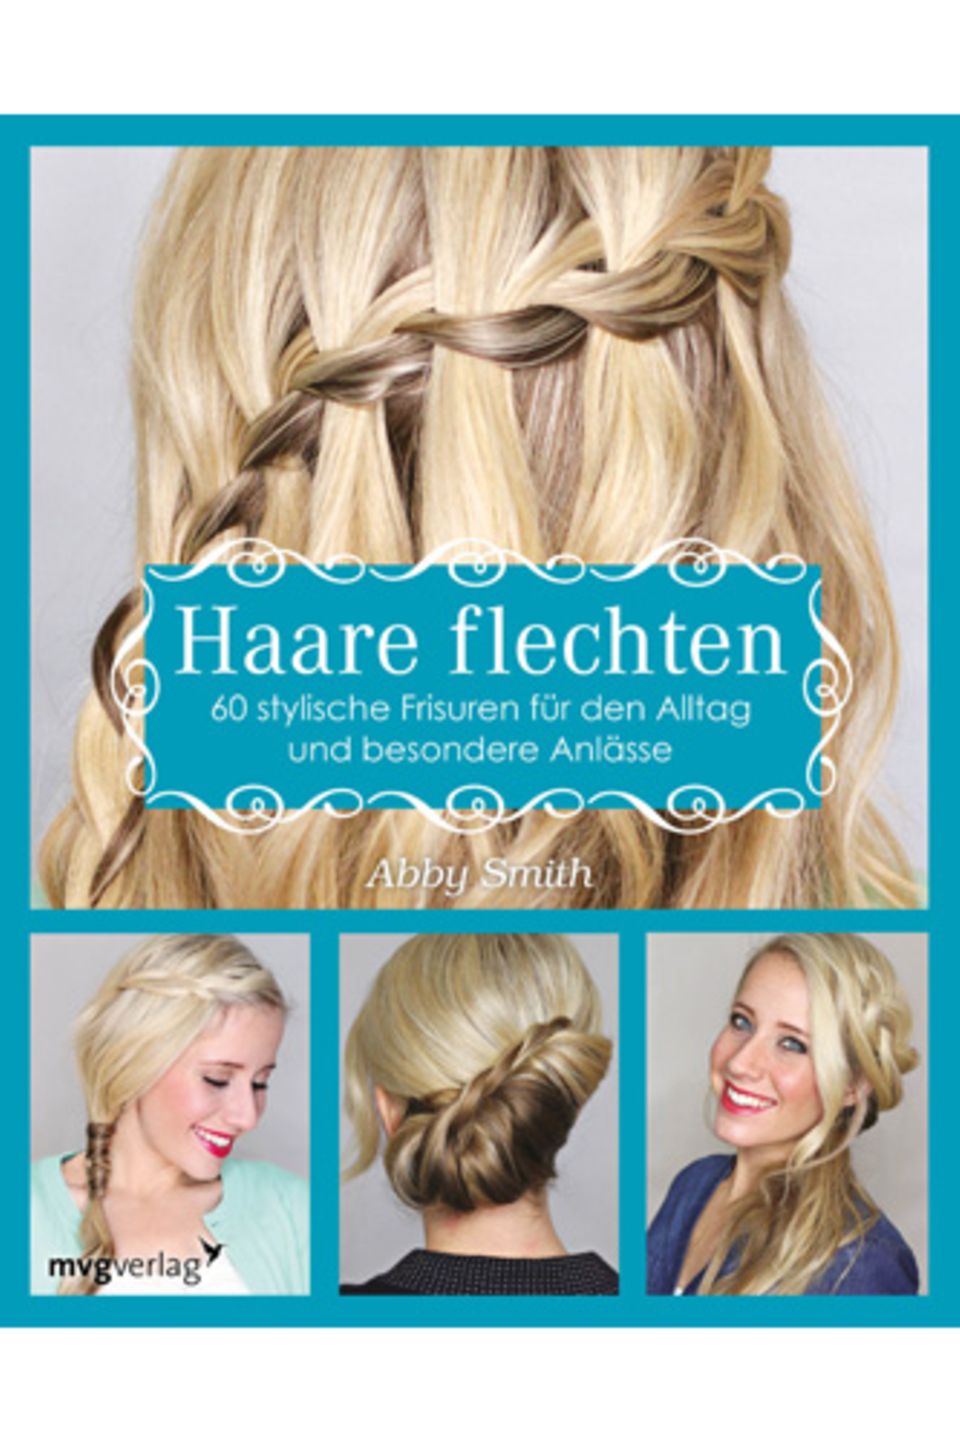 Noch mehr tolle Flechtfrisuren zeigt Abby Smith in ihrem Buch "Haare flechten - 60 stylische Frisuren für den Alltag und besondere Anlässe". Es ist im mvg Verlag erschienen und kostet ca. 15 Euro.